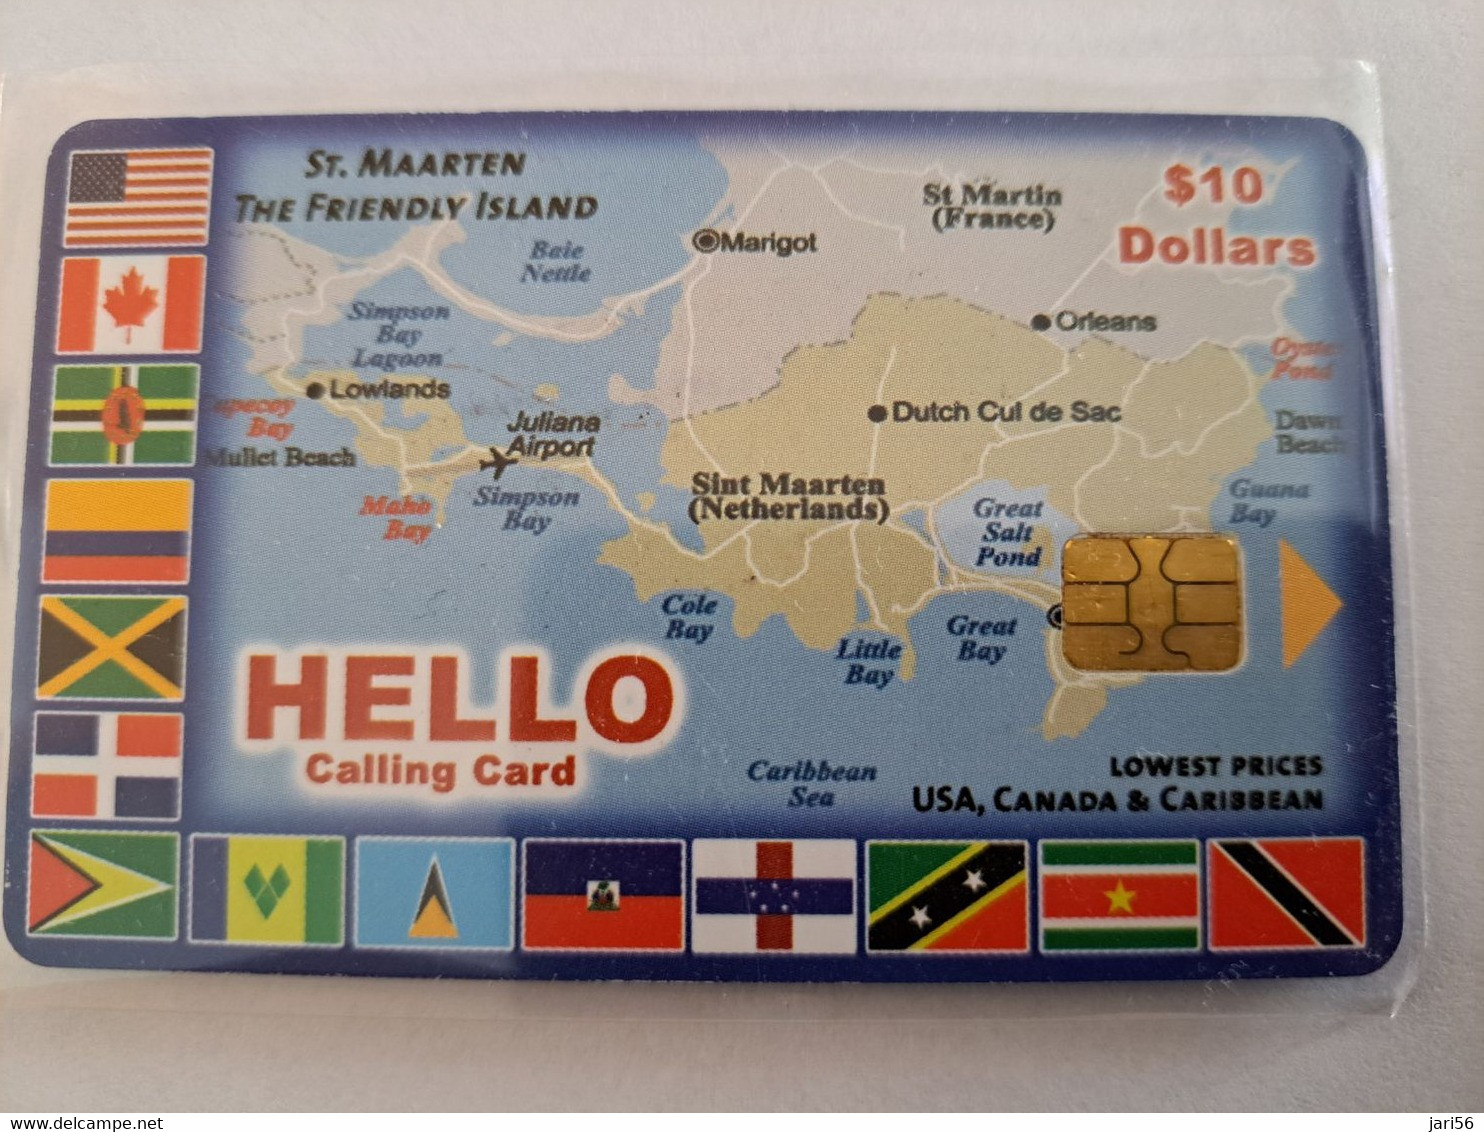 St MAARTEN CHIPCARD HELLO  MAP OF ST MAARTEN (RRRR)  $10   ST MAARTEN   **10716** - Antilles (Neérlandaises)